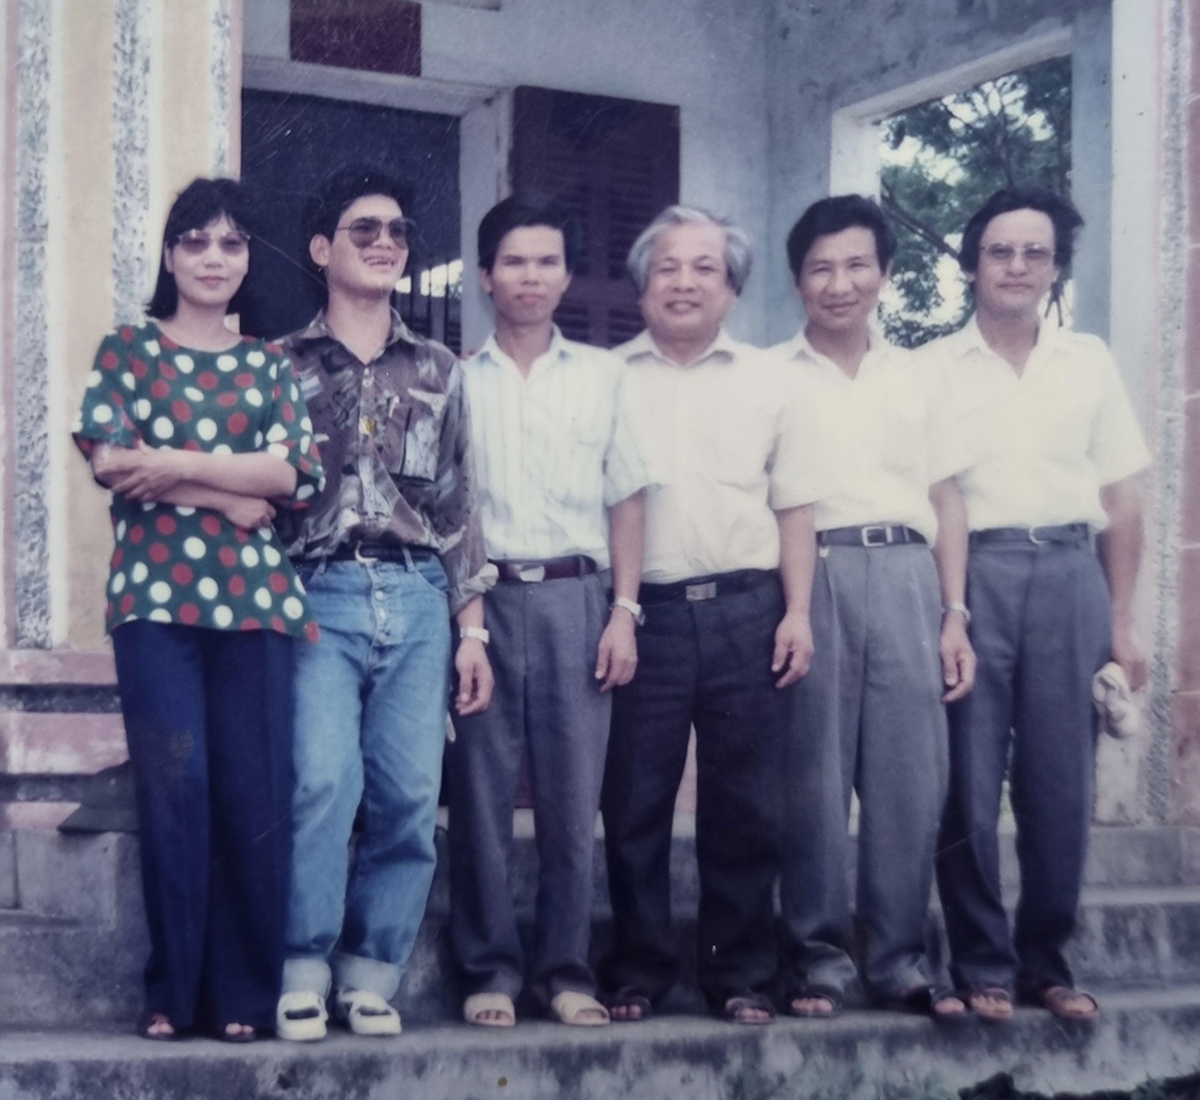 Nhà thơ Hà Đức Toàn (thứ tư từ trái sang) và các đồng nghiệp trong một chuyến đi thực tế năm 1995Nhà thơ Hà Đức Toàn (thứ tư từ trái sang) và các đồng nghiệp trong một chuyến đi thực tế năm 1995